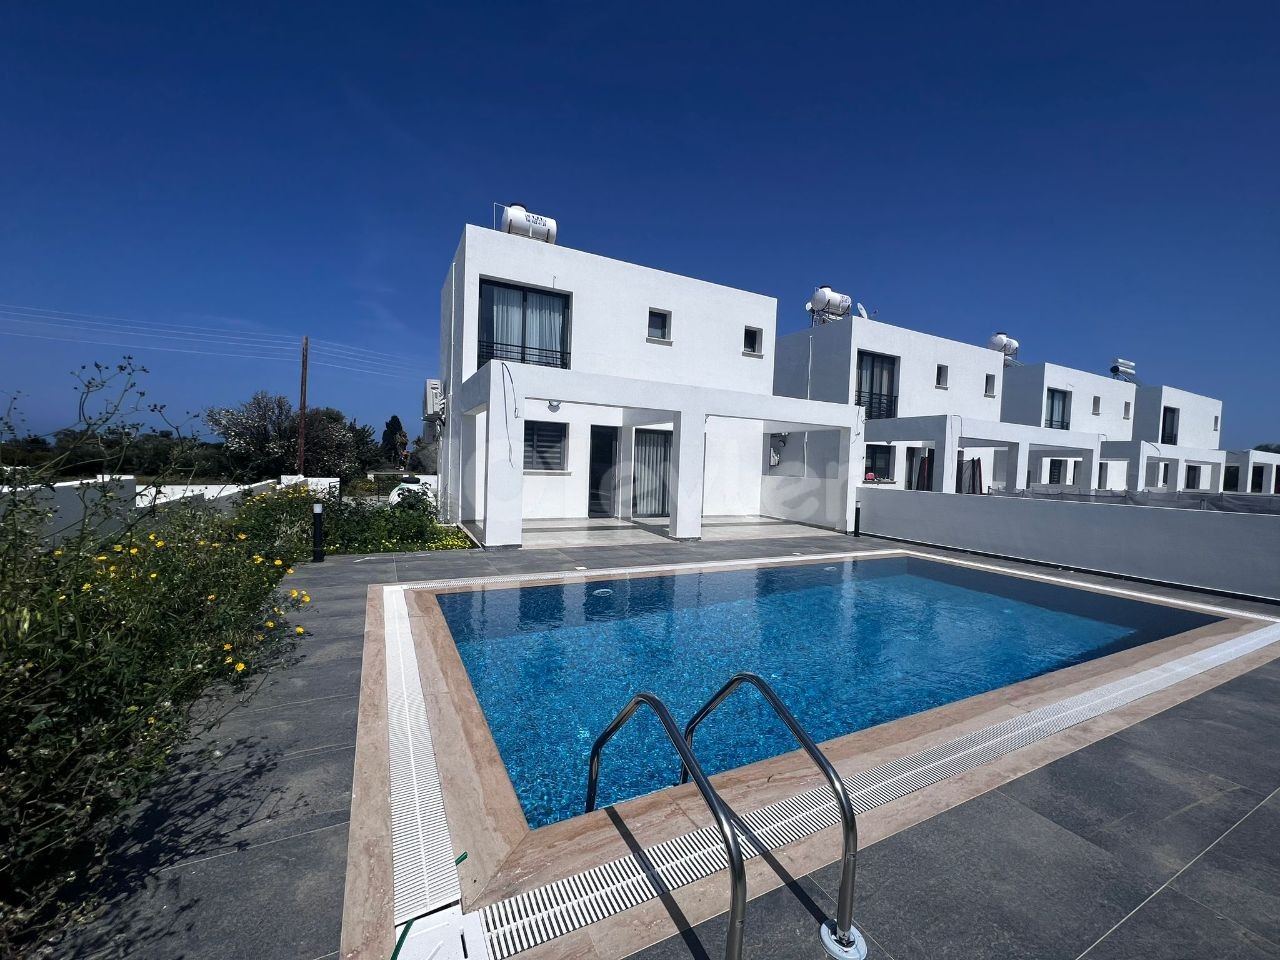 Ультра роскошная вилла с бассейном 3+1 рядом с морем в аренду на Кипре - Кирения - Эдремит